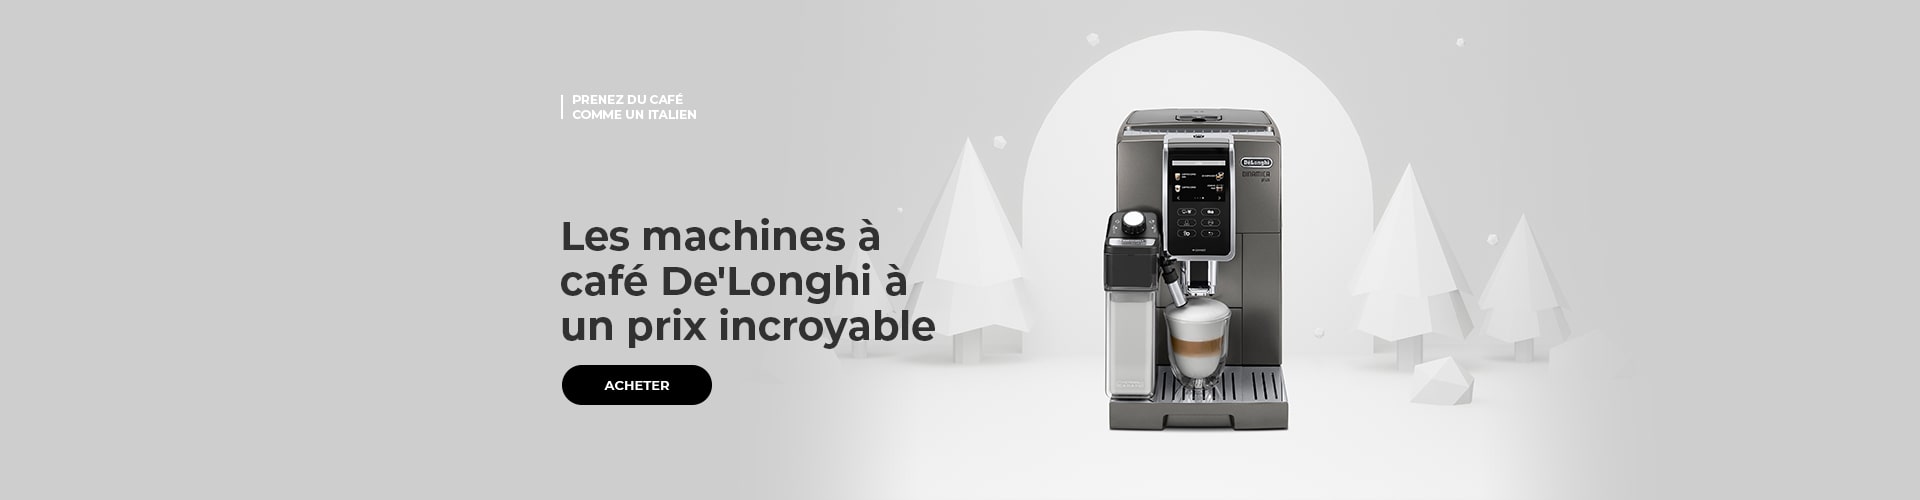 Les machines à café De'Longhi à un prix incroyable